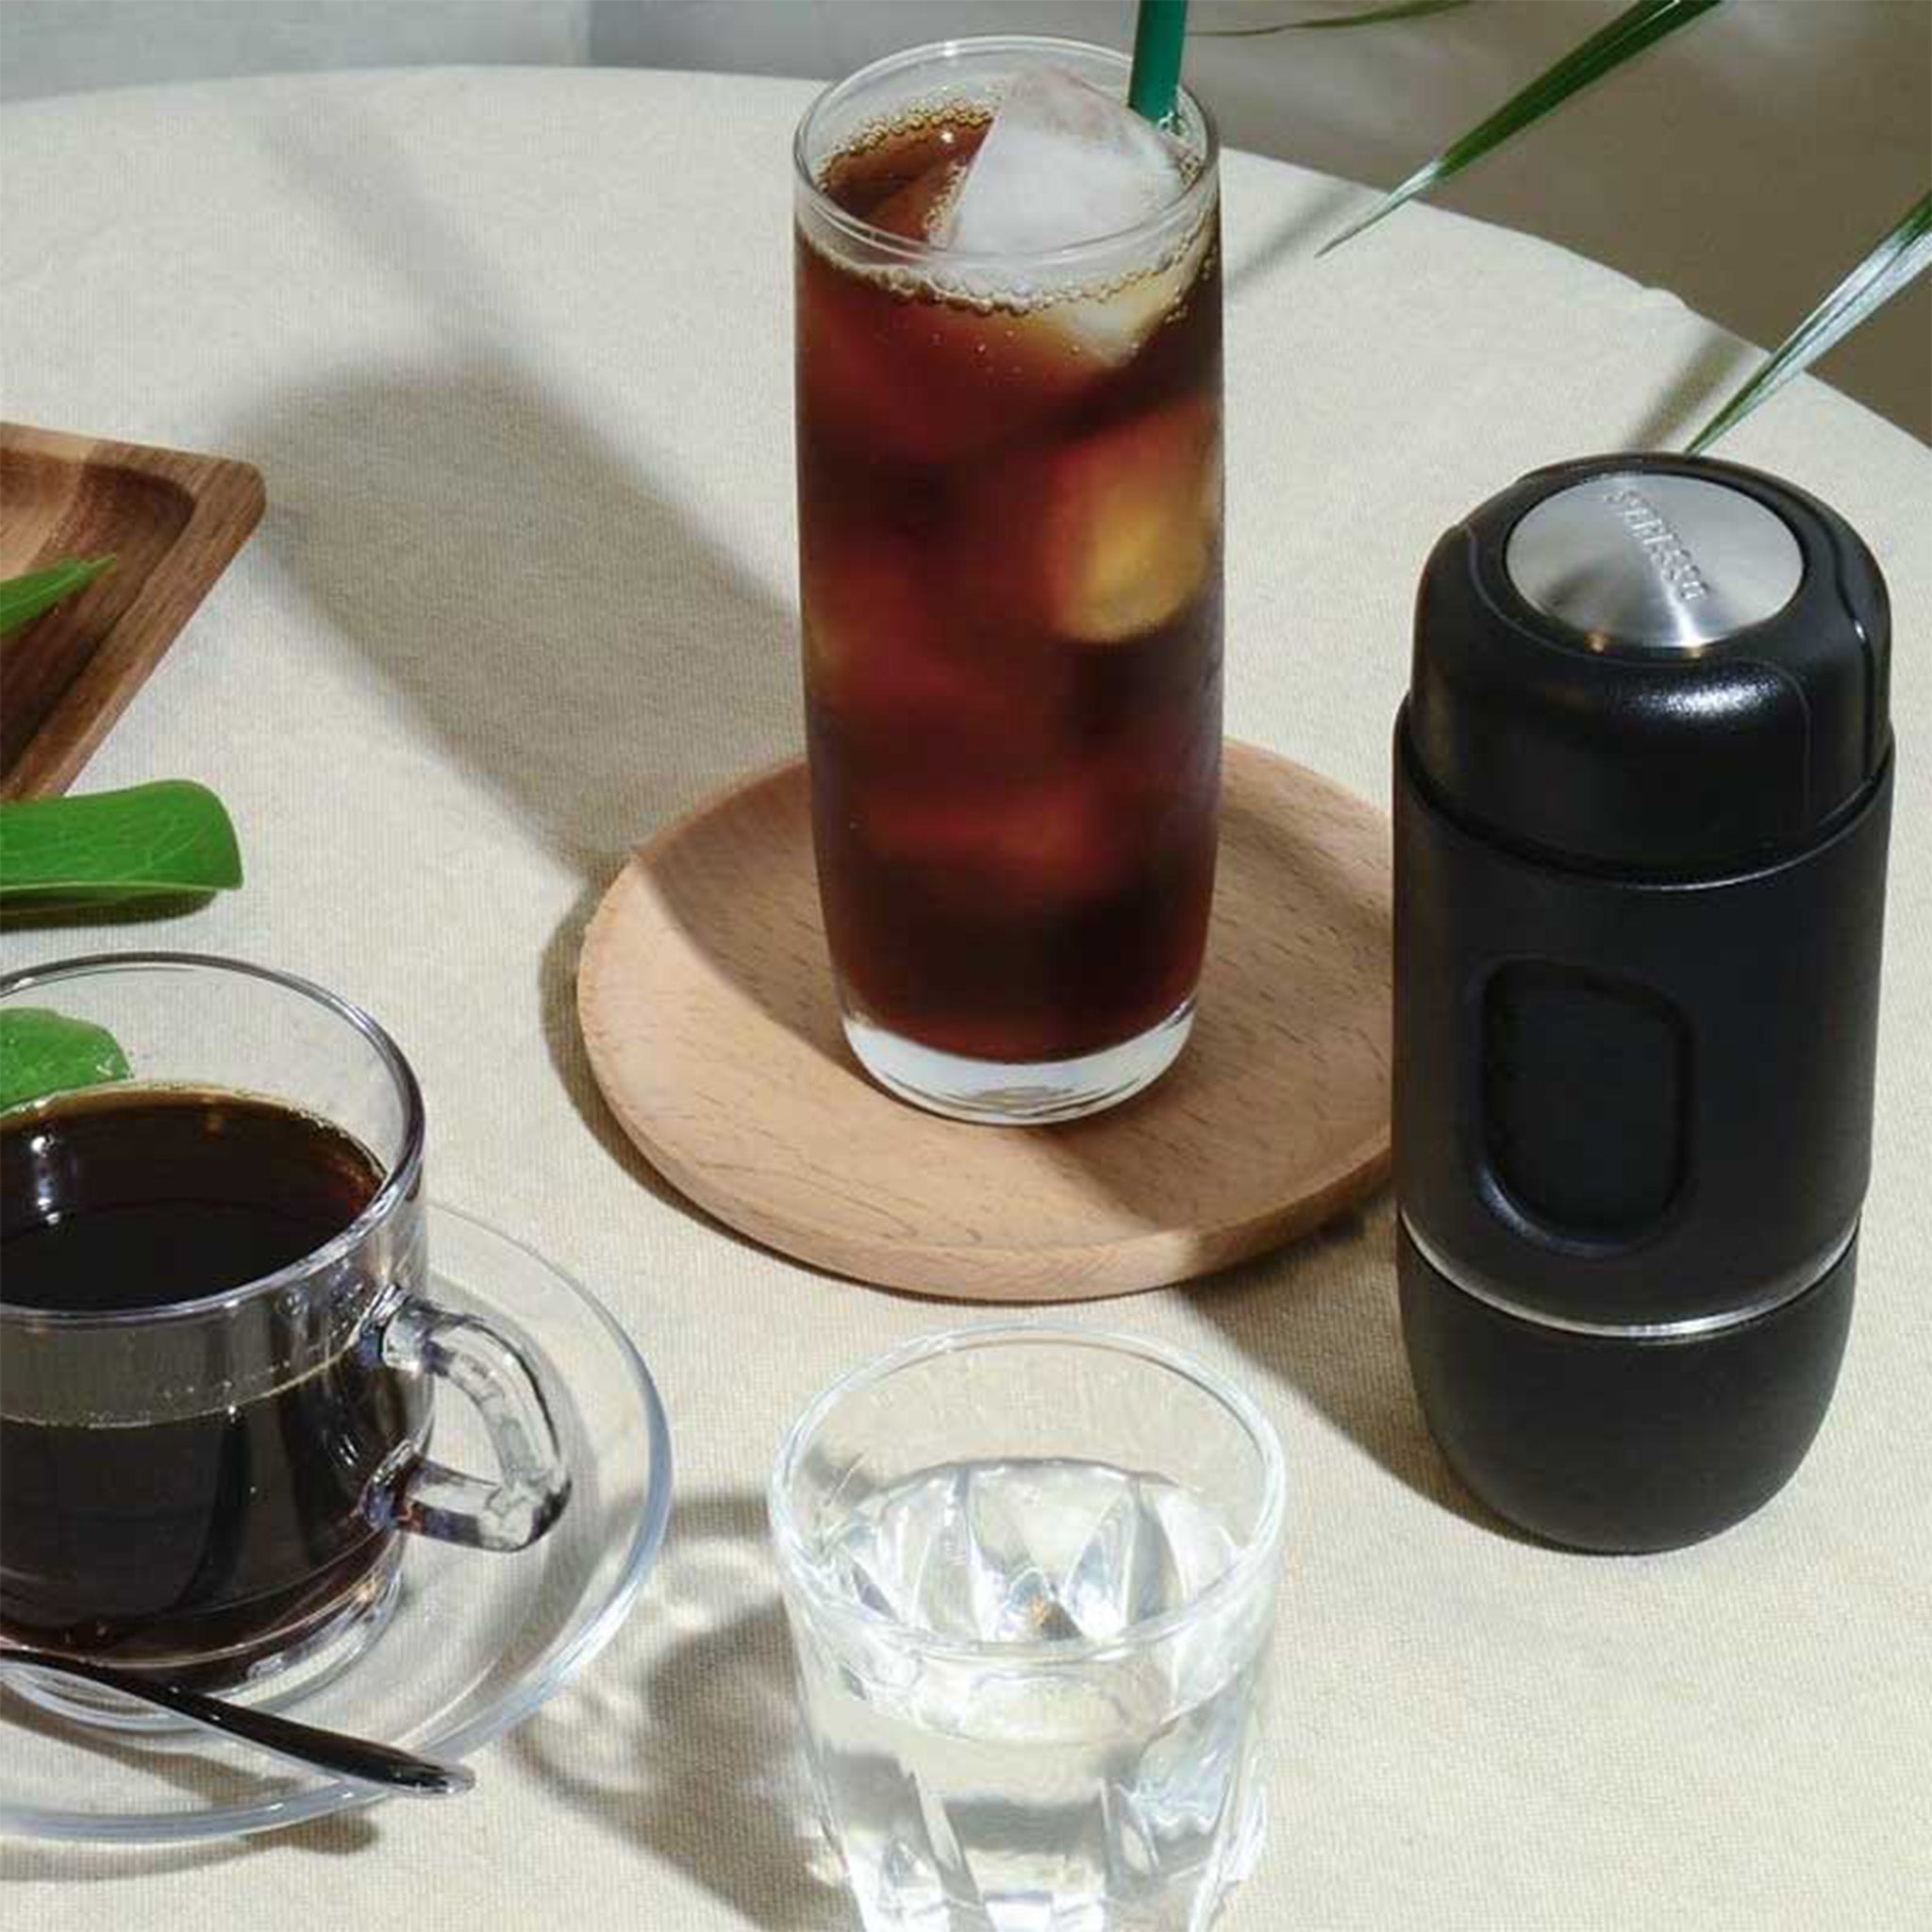 STARESSO Mini Portable Handheld Espresso Machine